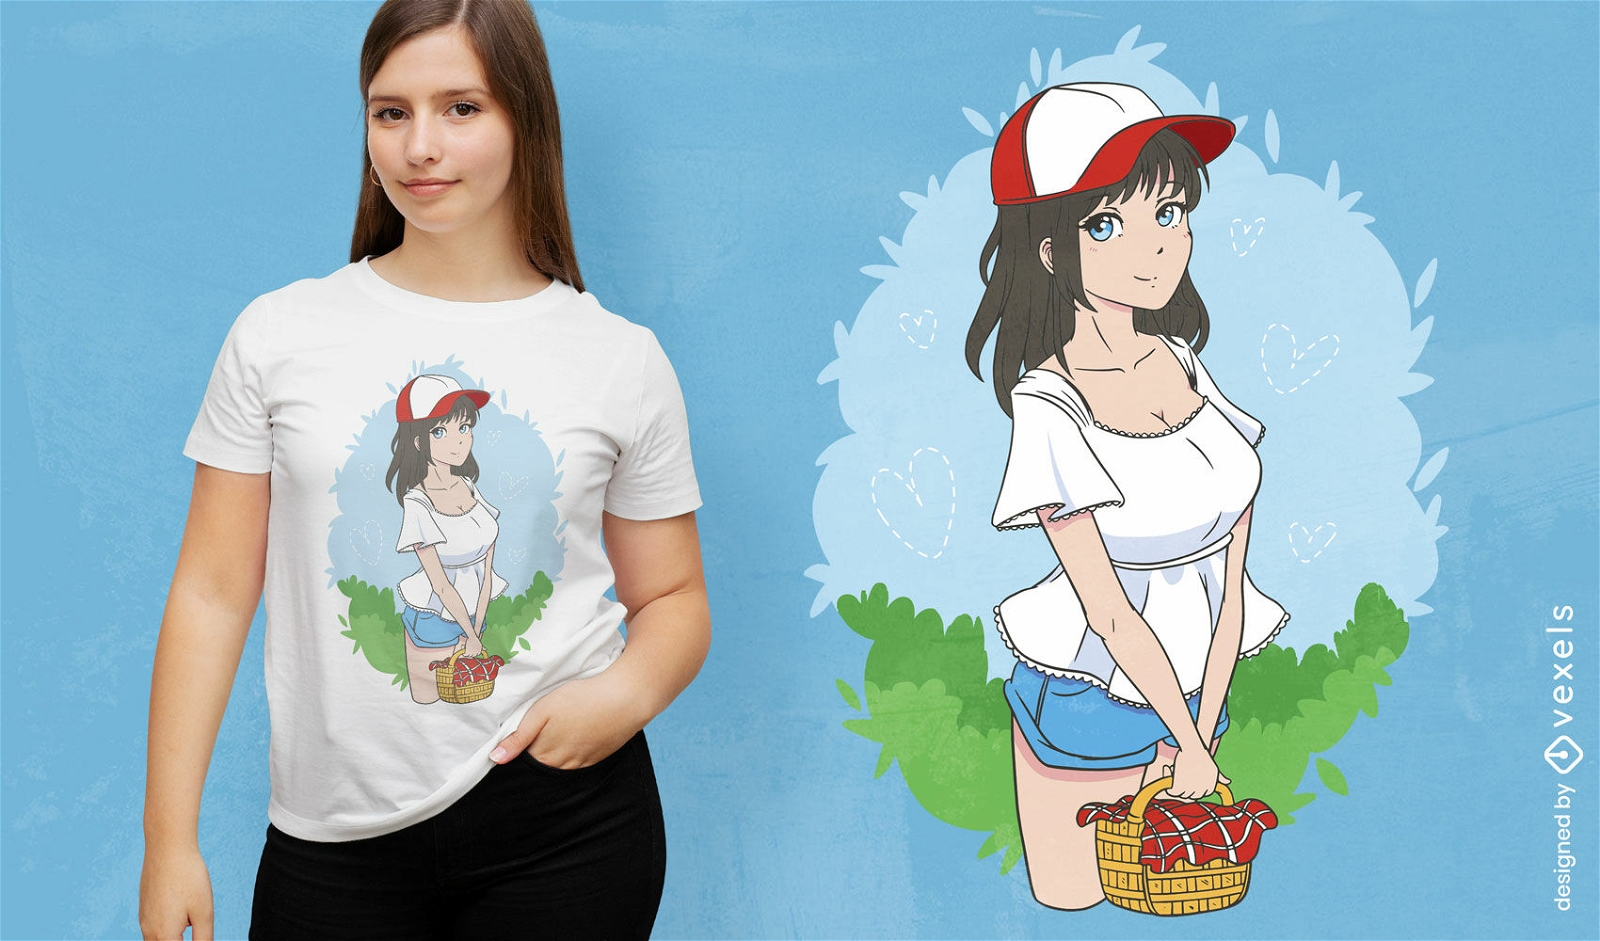 Picknick-Anime-M?dchen-T-Shirt-Design